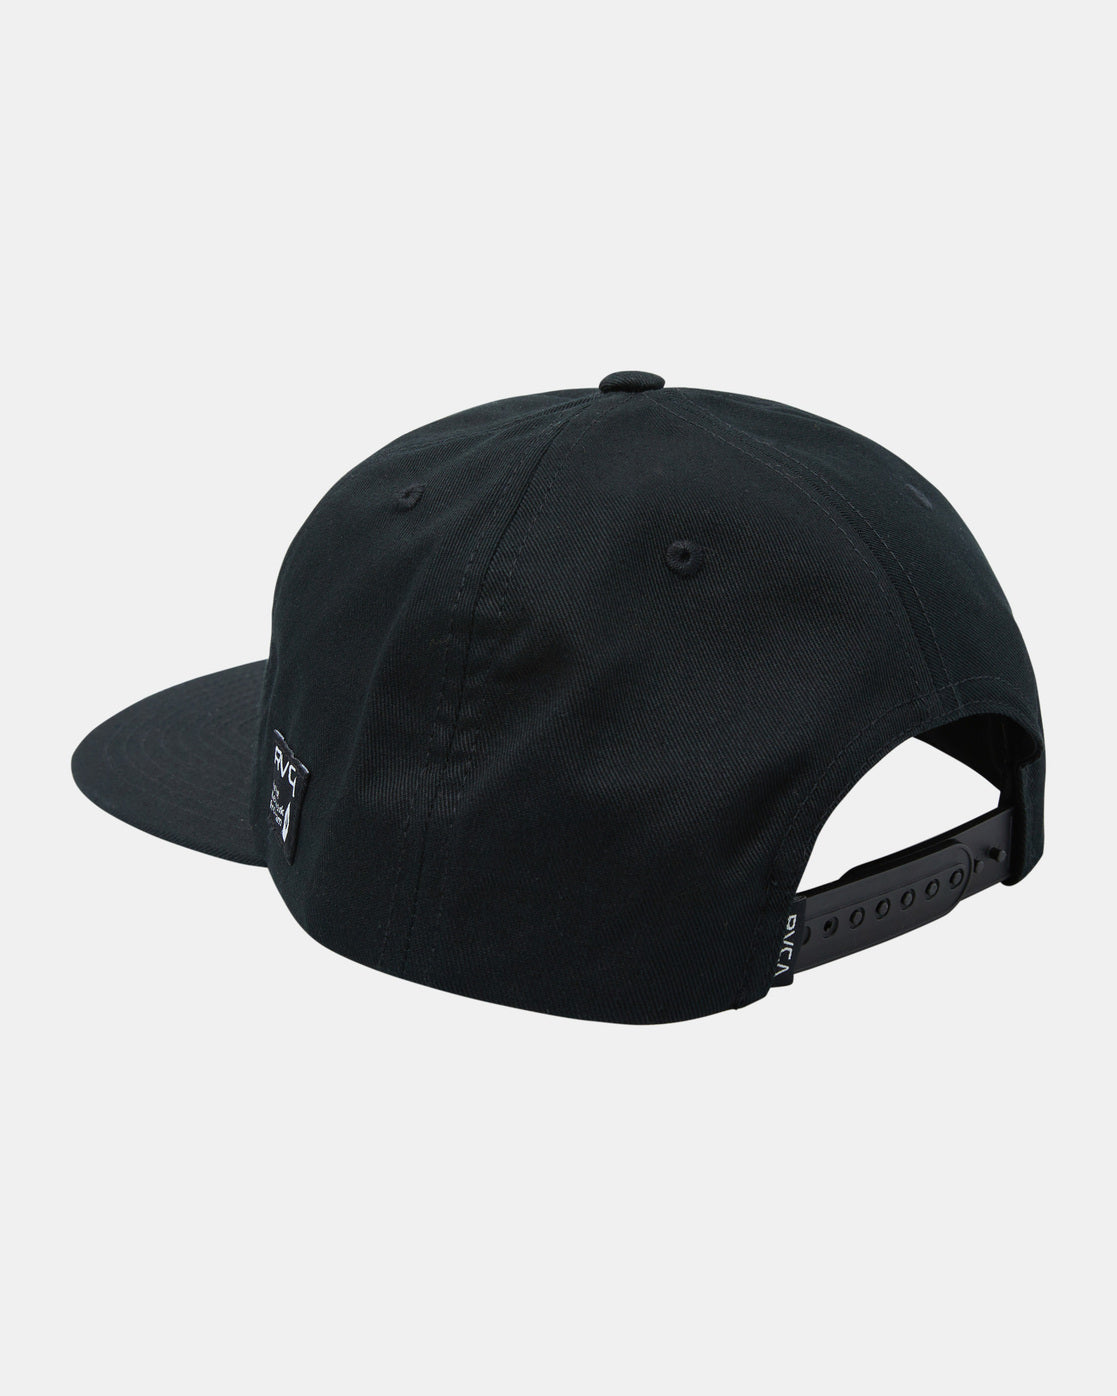 RVCA Tag Snapback Hat - Black